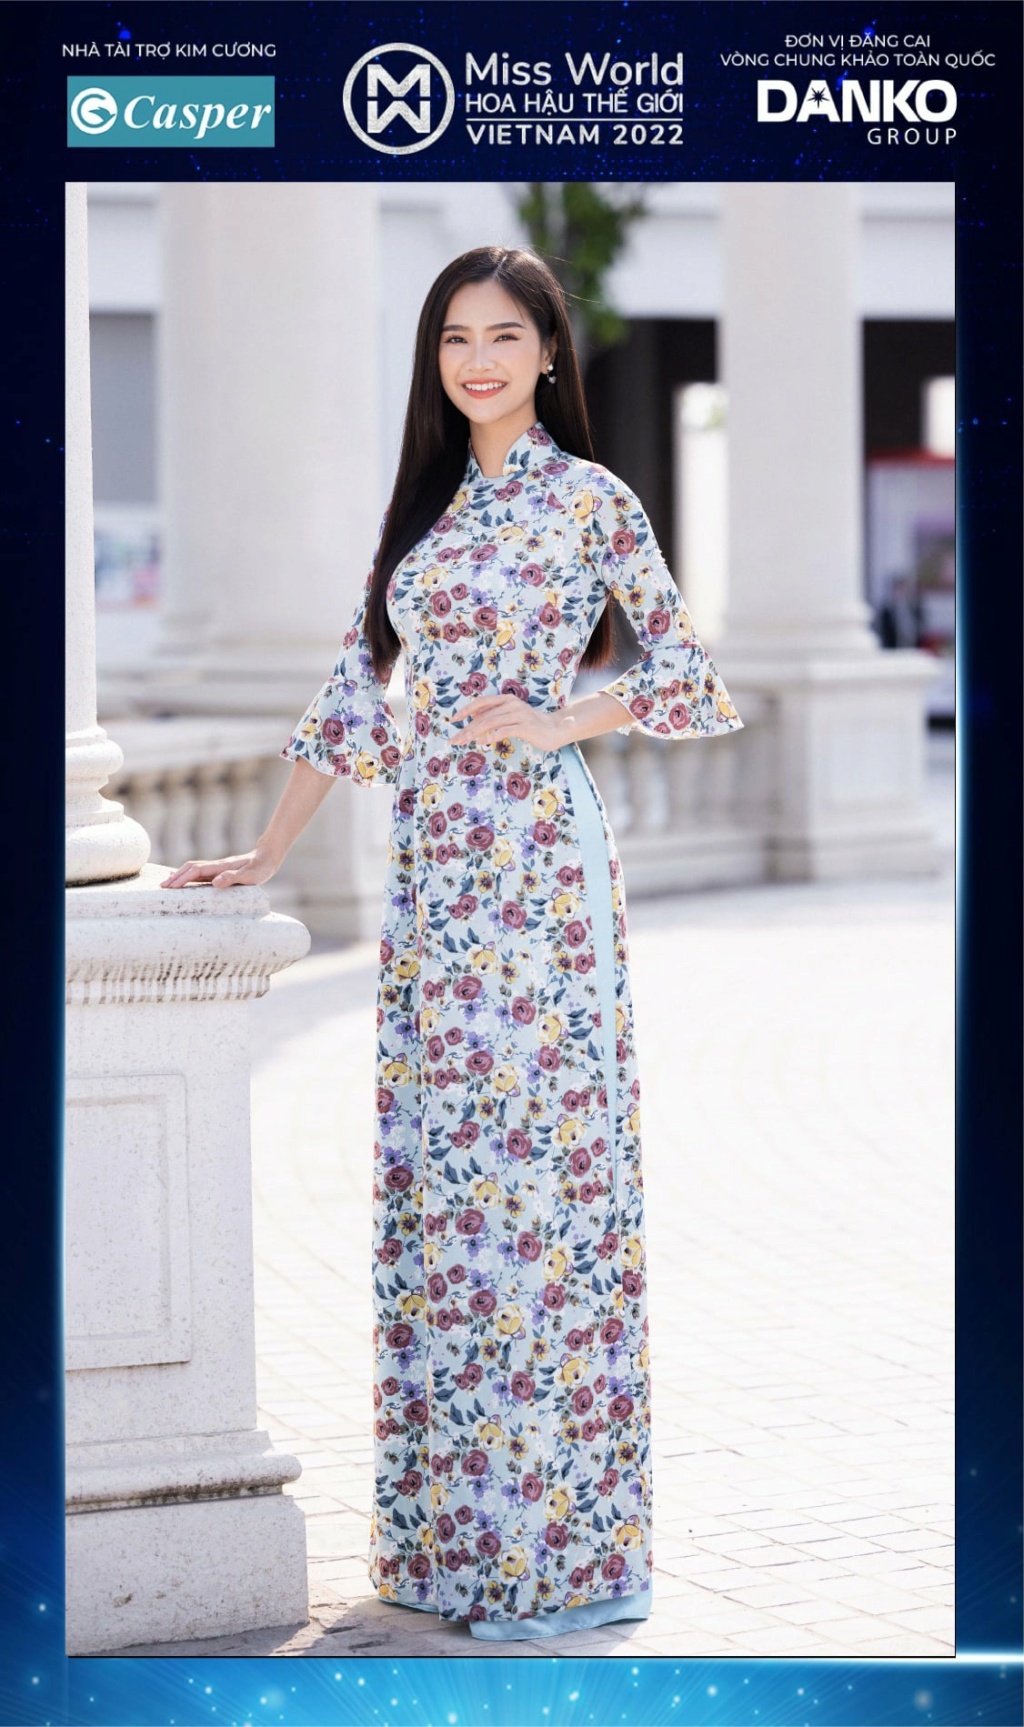 Miss World Vietnam 2022 27912011